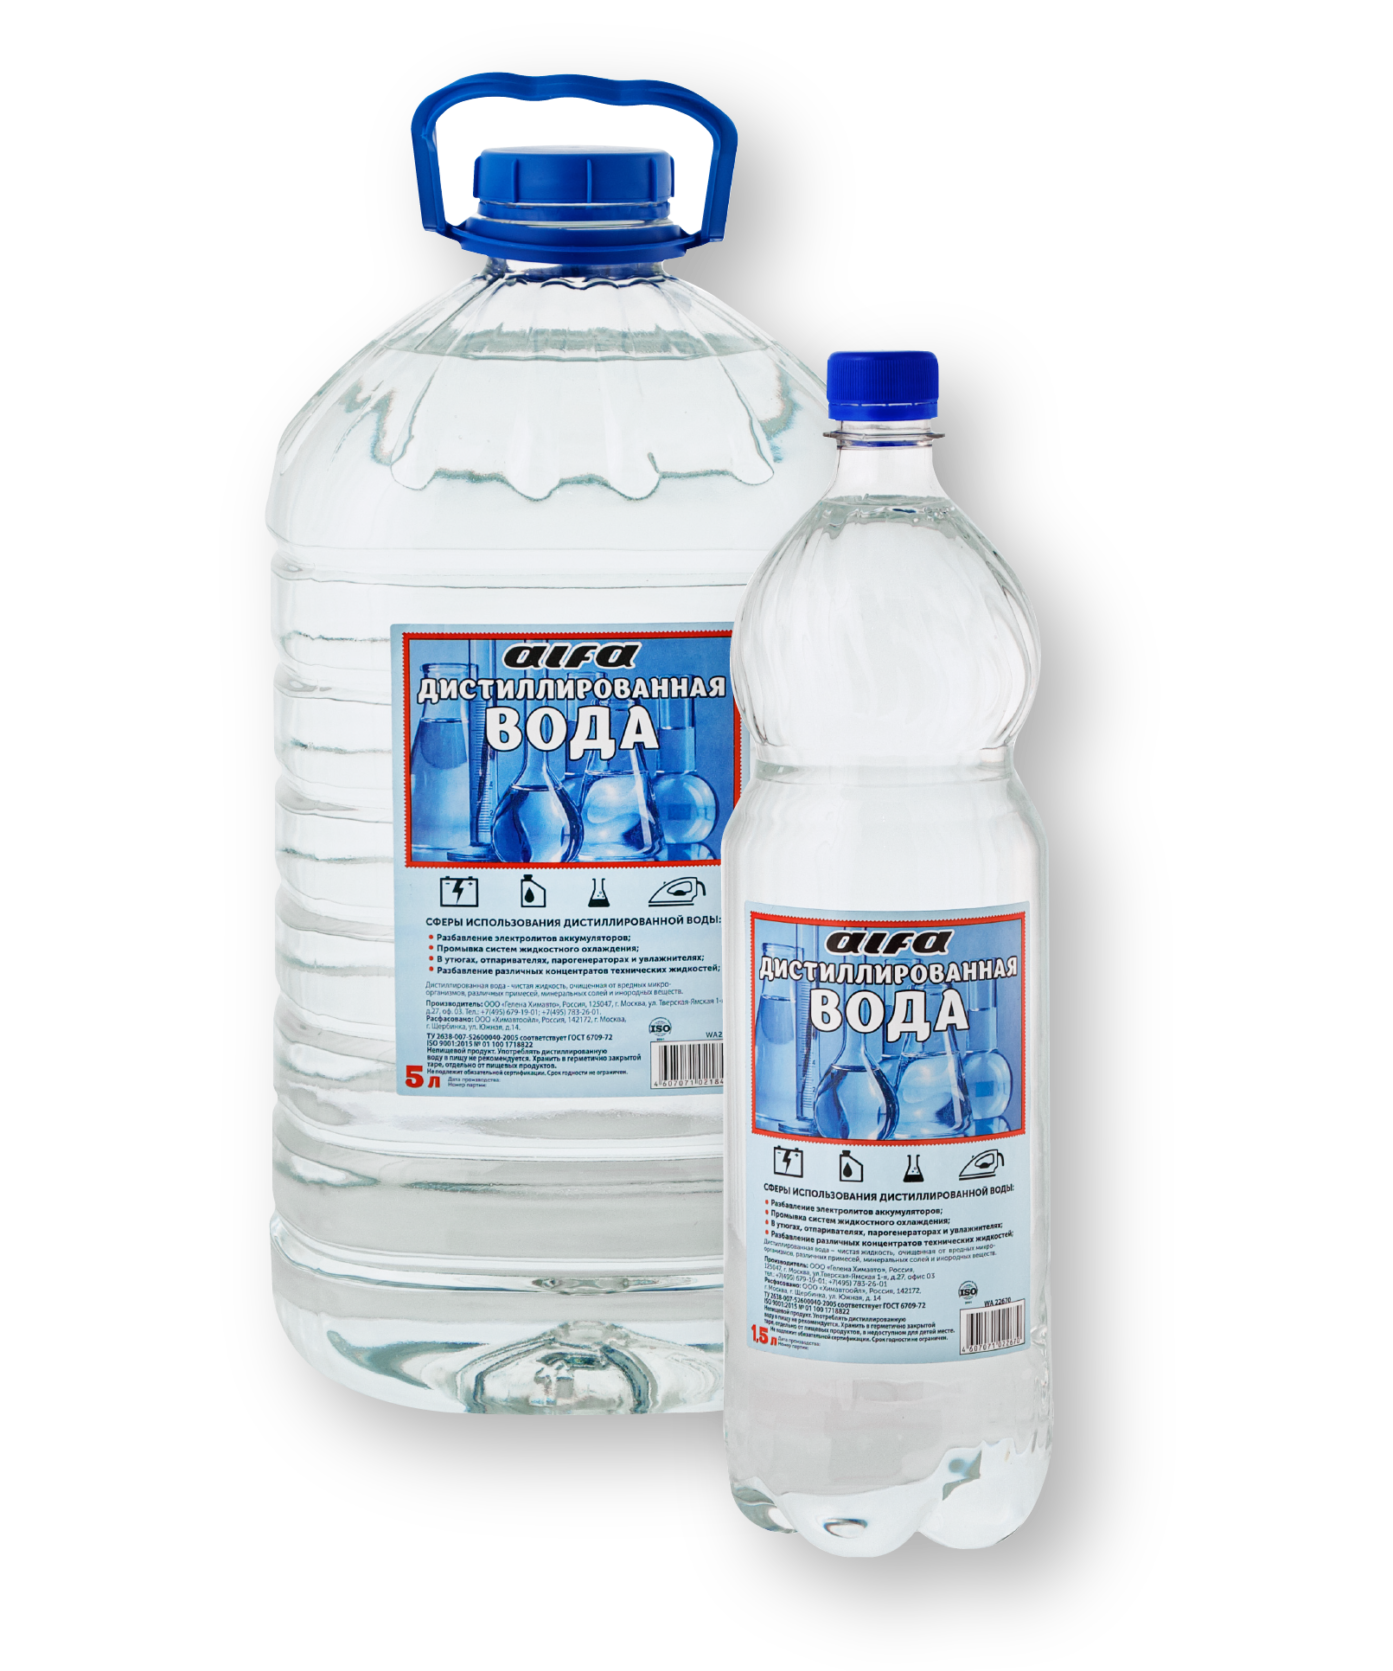 Дистиллированная вода оптом. Вода дистиллированная 20л Alfa ГЕЛЕНАХИМАВТО wa21871. Вода дистиллированная Alfa 5 л. Вода дистиллированная Alfa 5л 1/6. Вода дистиллированная 1,5л eltrans.